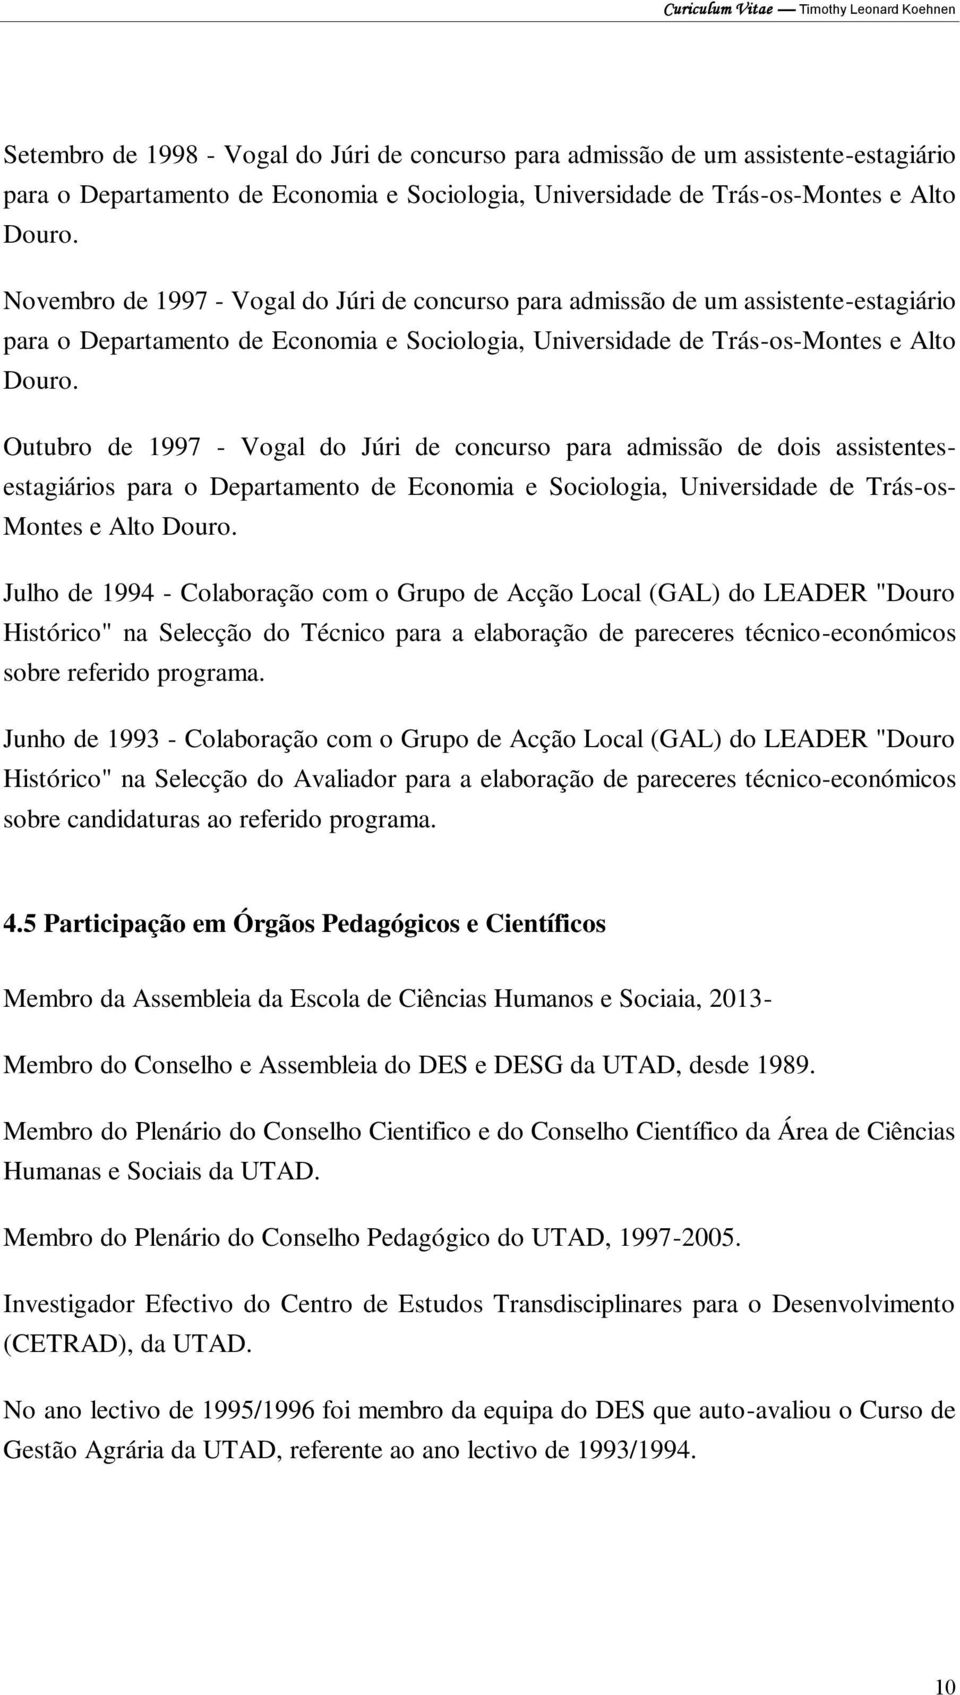 Outubro de 1997 - Vogal do Júri de concurso para admissão de dois assistentesestagiários para o Departamento de Economia e Sociologia, Universidade de Trás-os- Montes e Alto Douro.